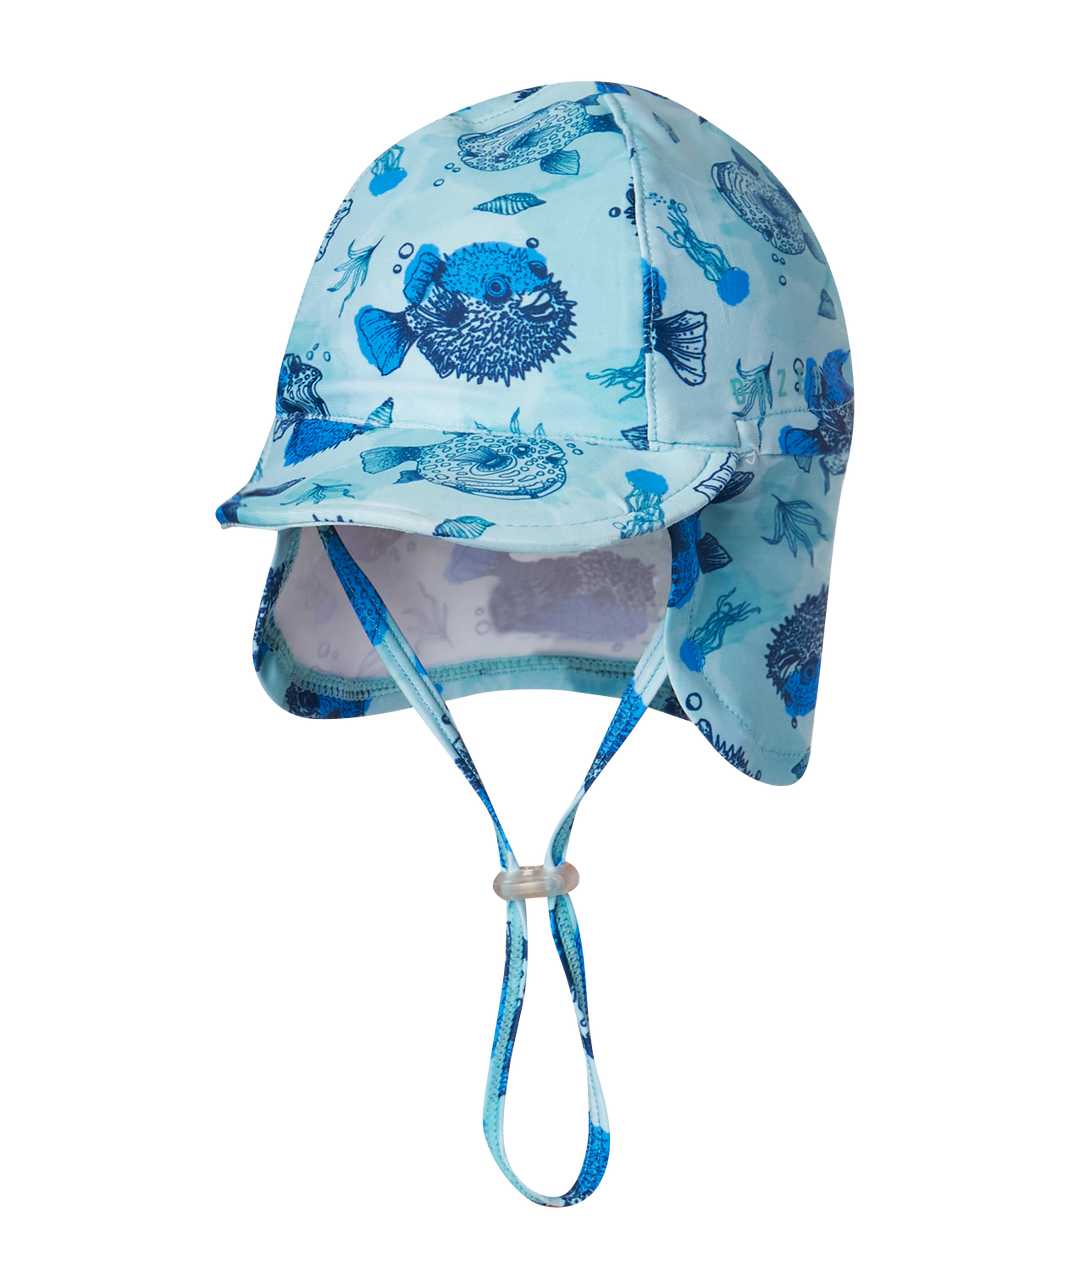 Dozer Baby - Legionnaire Swim Hat - Pufferfish Blue